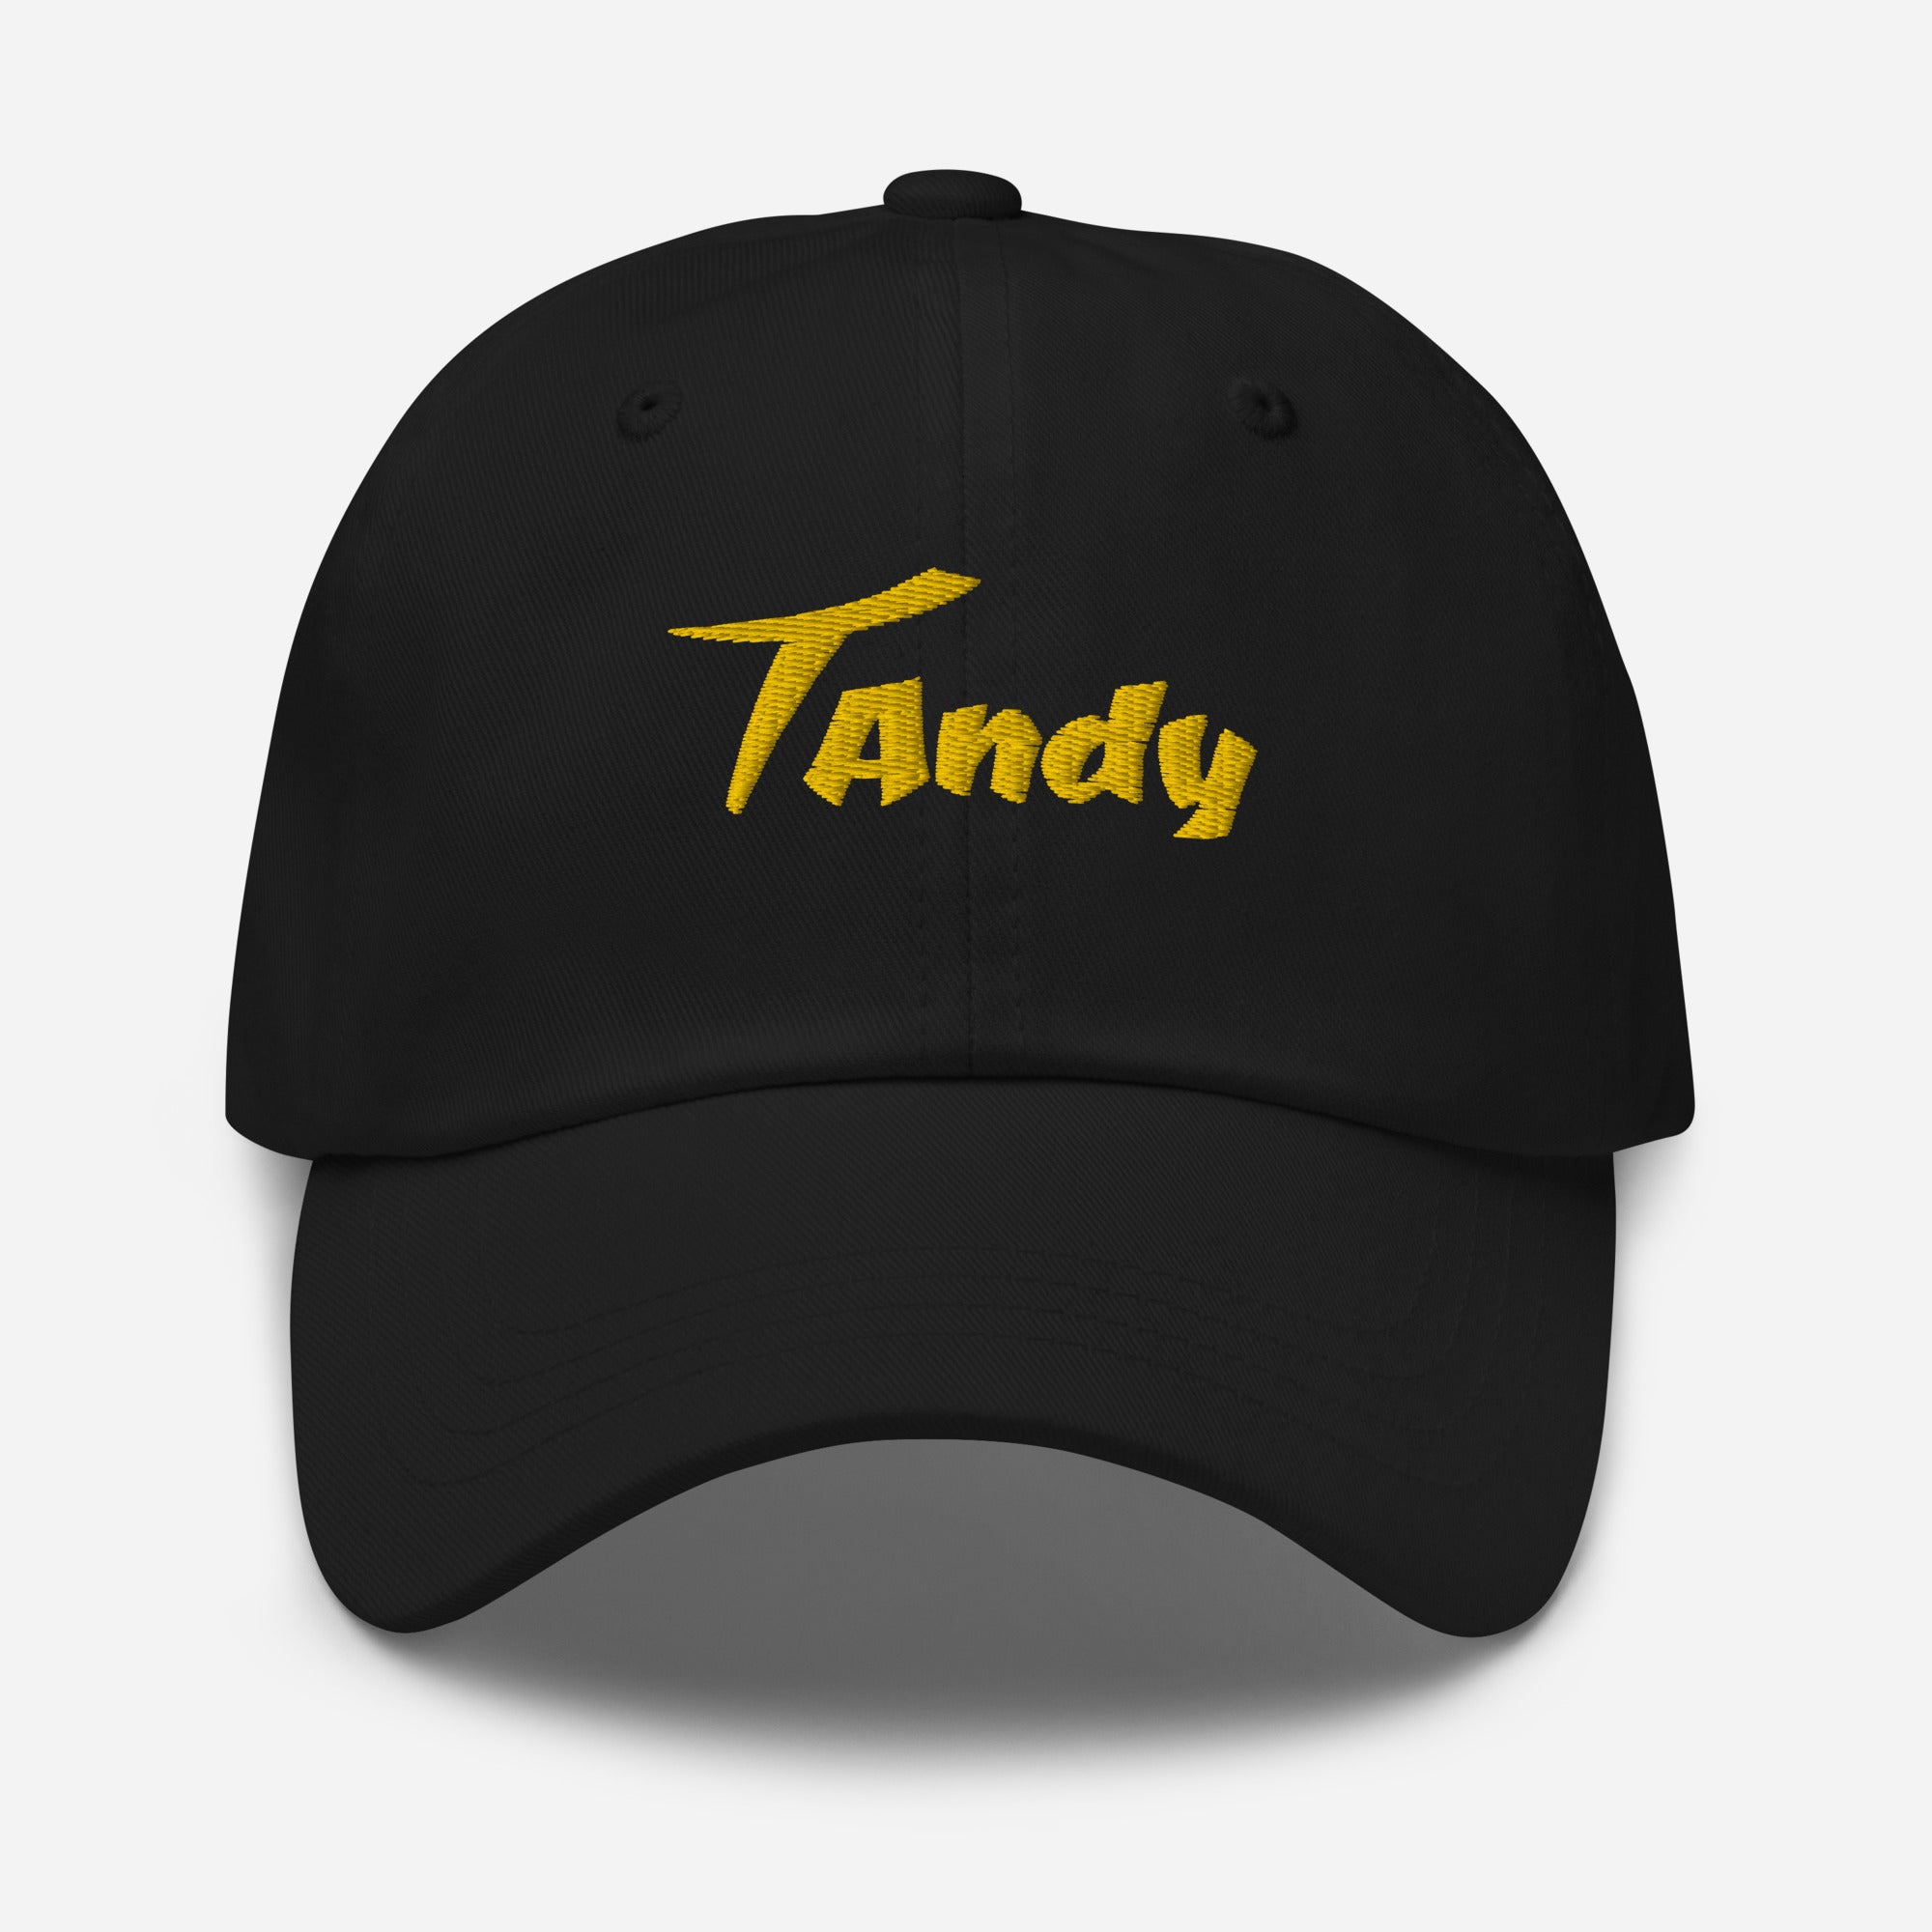 Tandy Dad hat